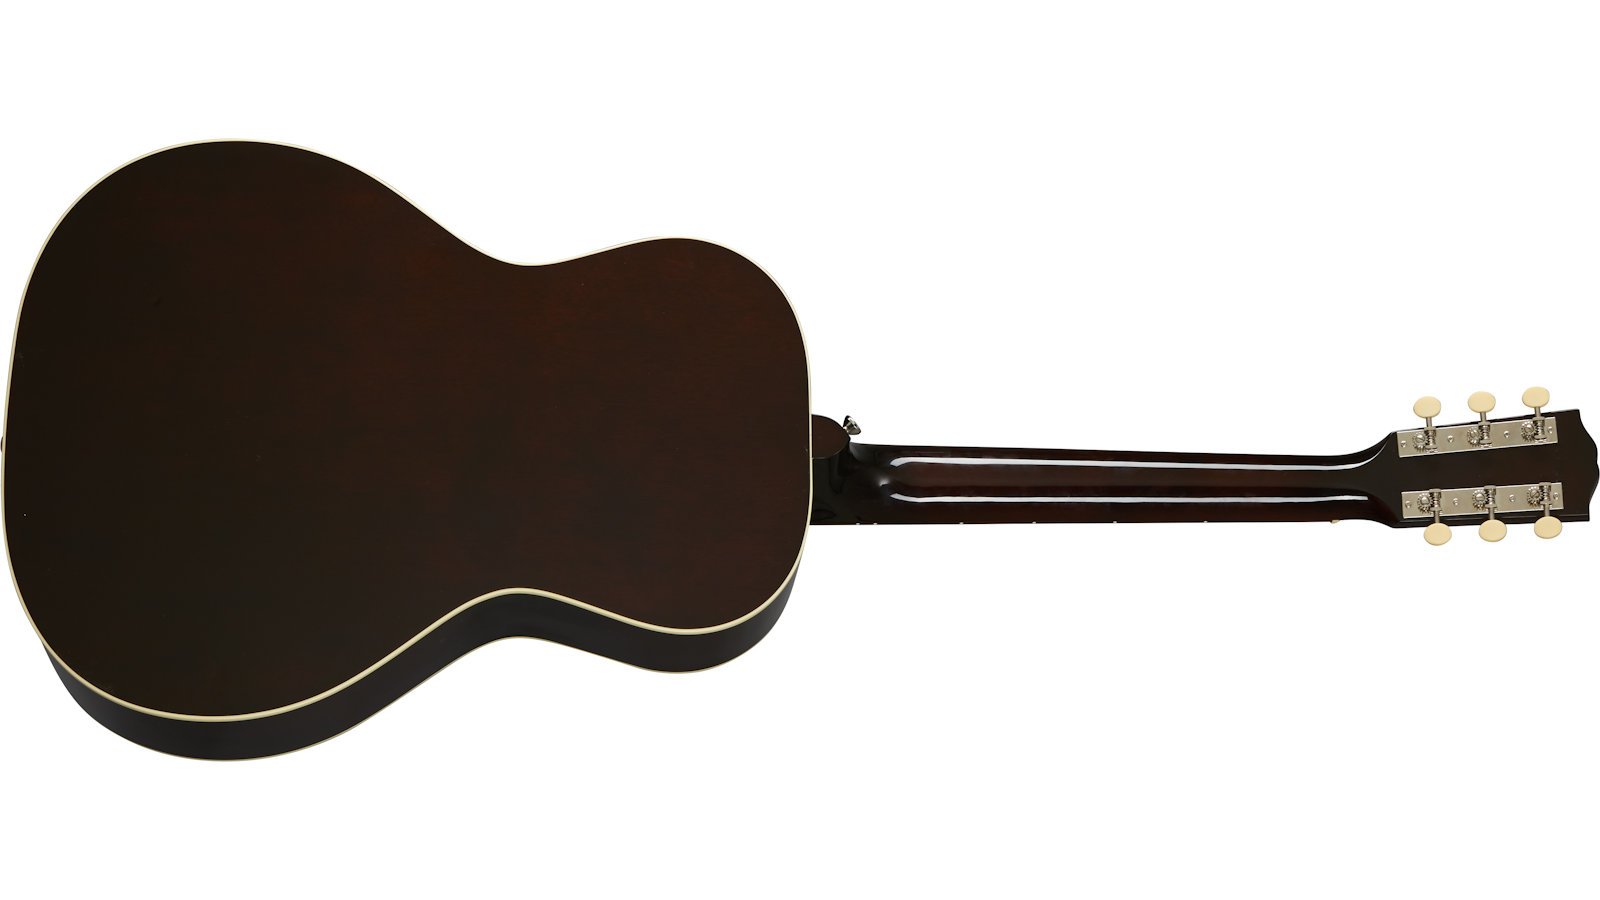 Gibson L-00 Original Lh 2020 Parlor Gaucher Epicea Acajou Rw - Vintage Sunburst - Guitare Electro Acoustique - Variation 1